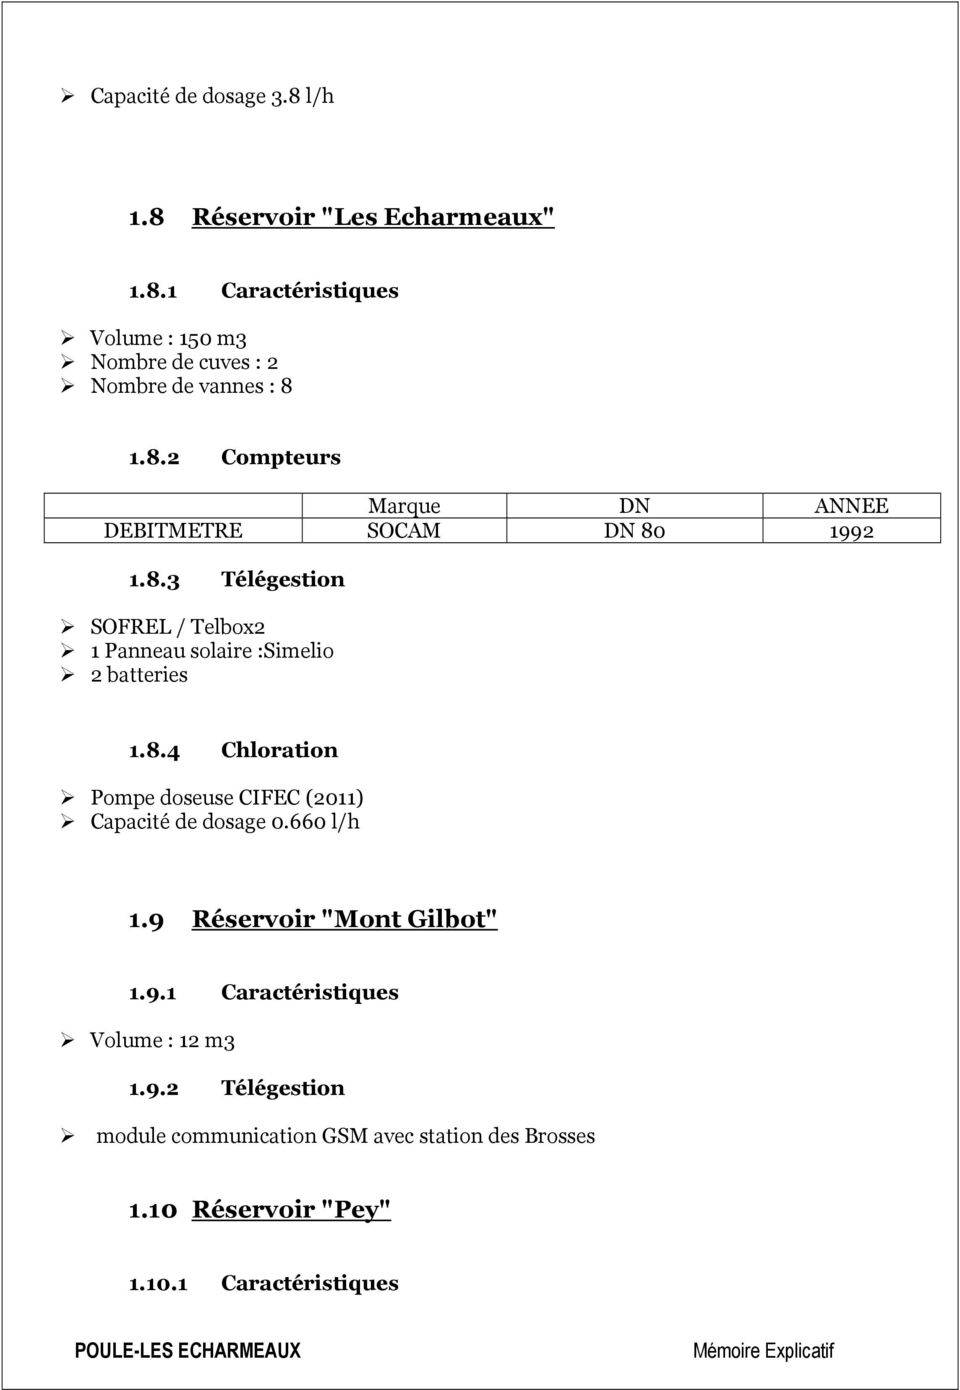 8.4 Chloration Pompe doseuse CIFEC (2011) Capacité de dosage 0.660 l/h 1.9 Réservoir "Mont Gilbot" 1.9.1 Caractéristiques Volume : 12 m3 1.